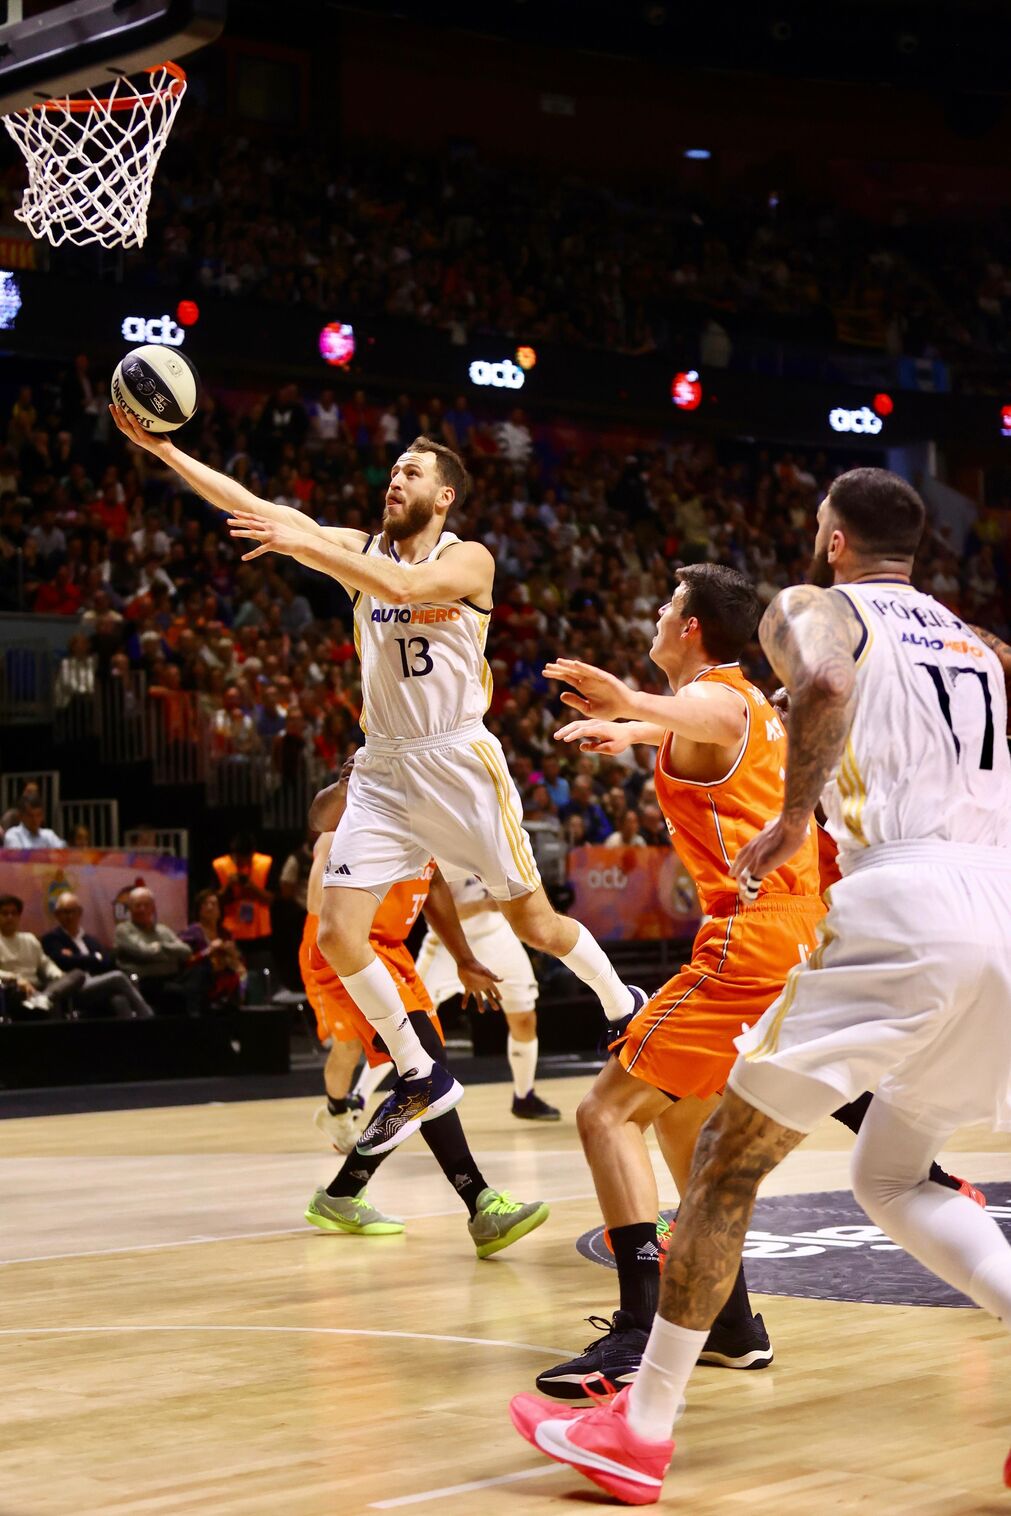 El Real Madrid - Valencia Basket de Copa del Rey, en fotos